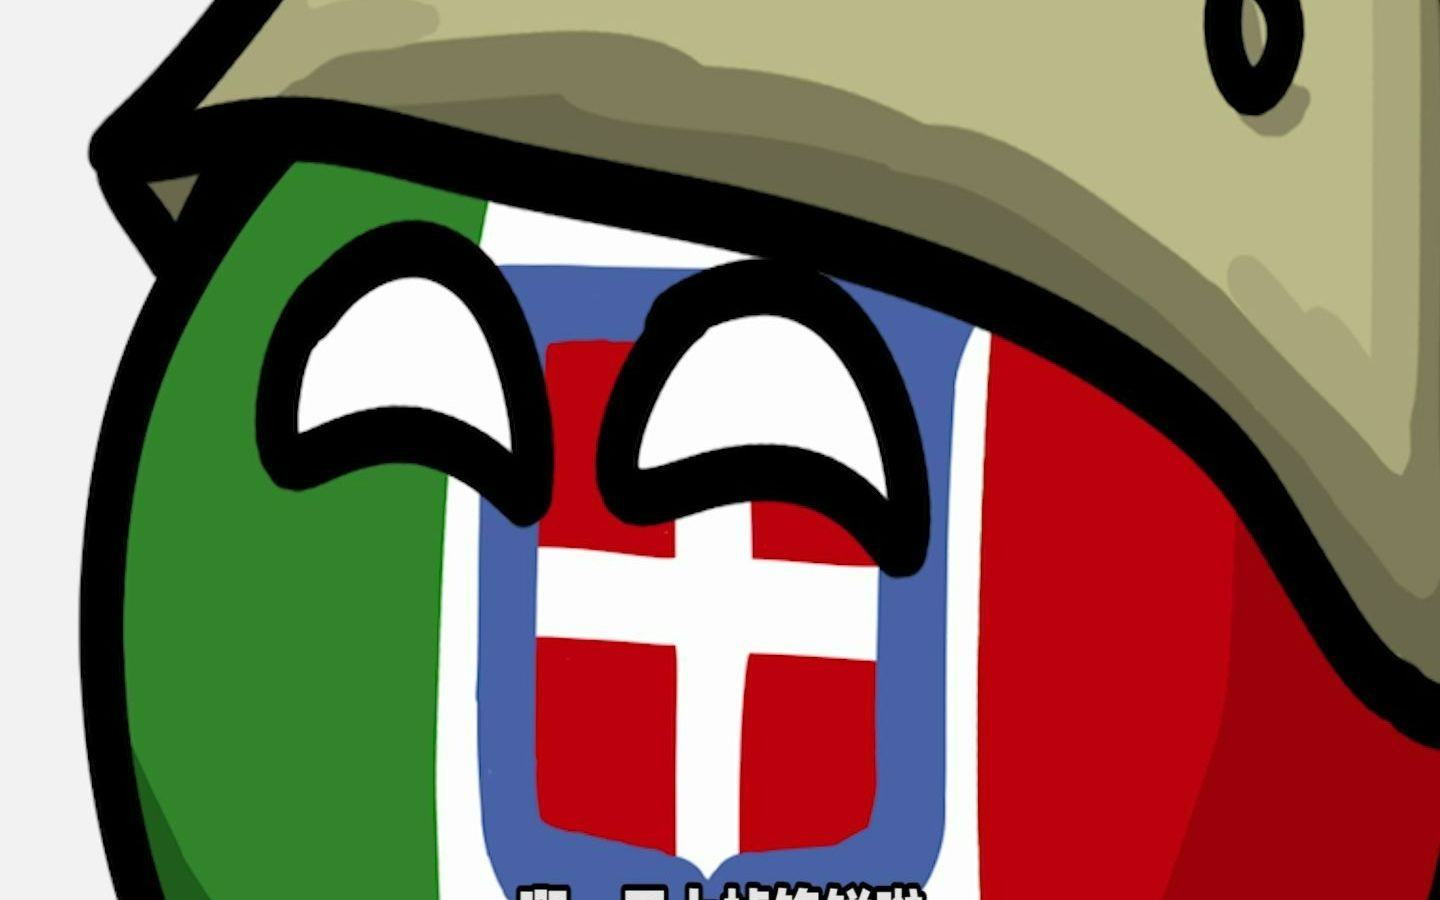 【波兰球】意大利:向法国宣战!